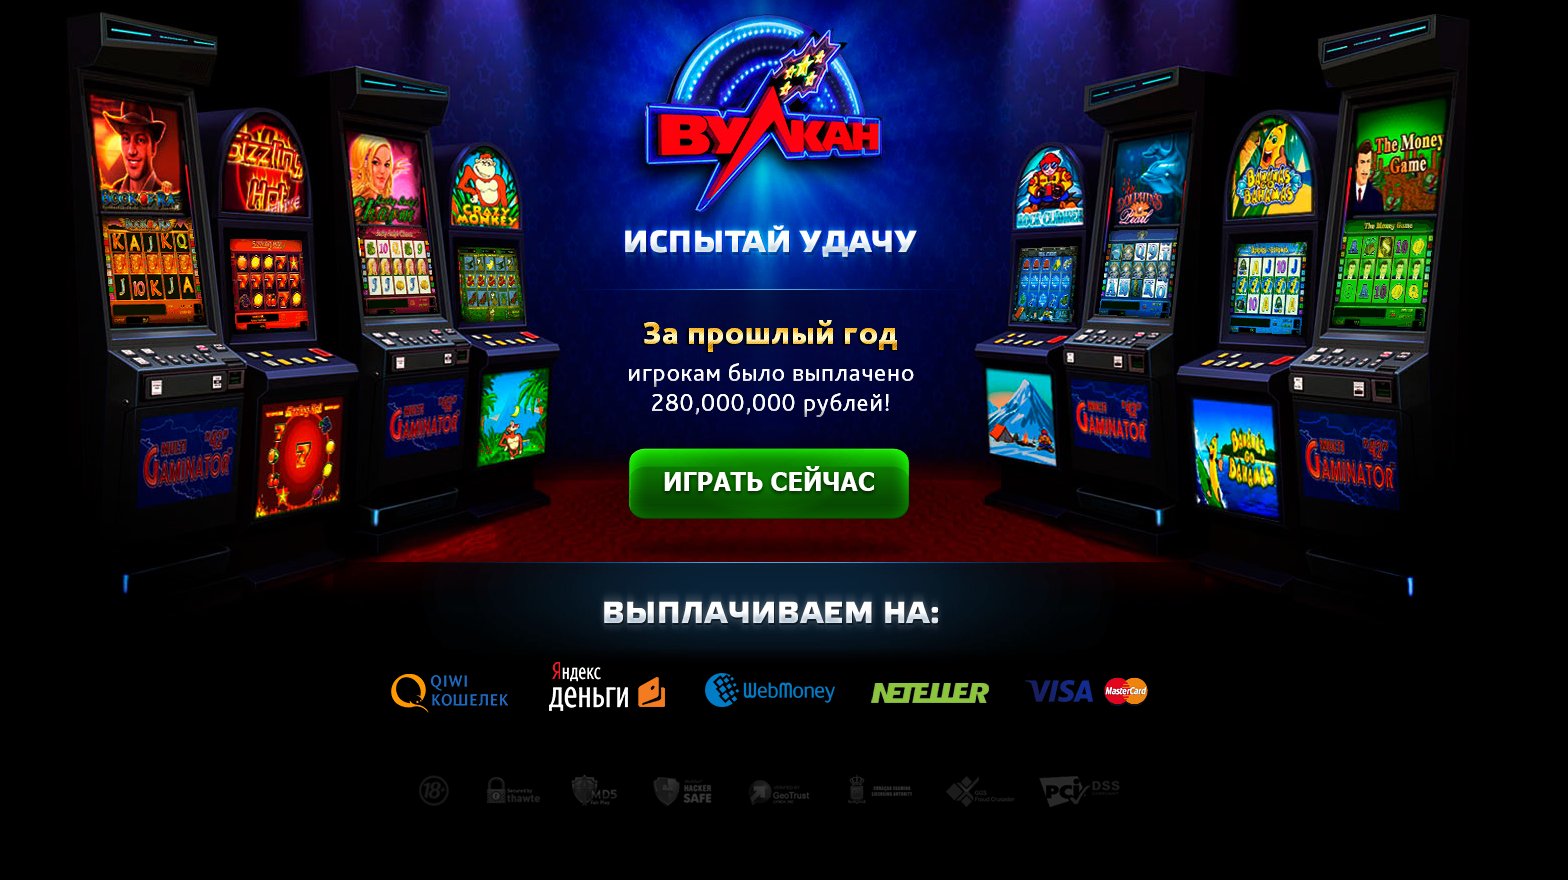 Скачать вулкан игровые автоматы на компьютер проверенные казино онлайн top kazino luchshie5 com